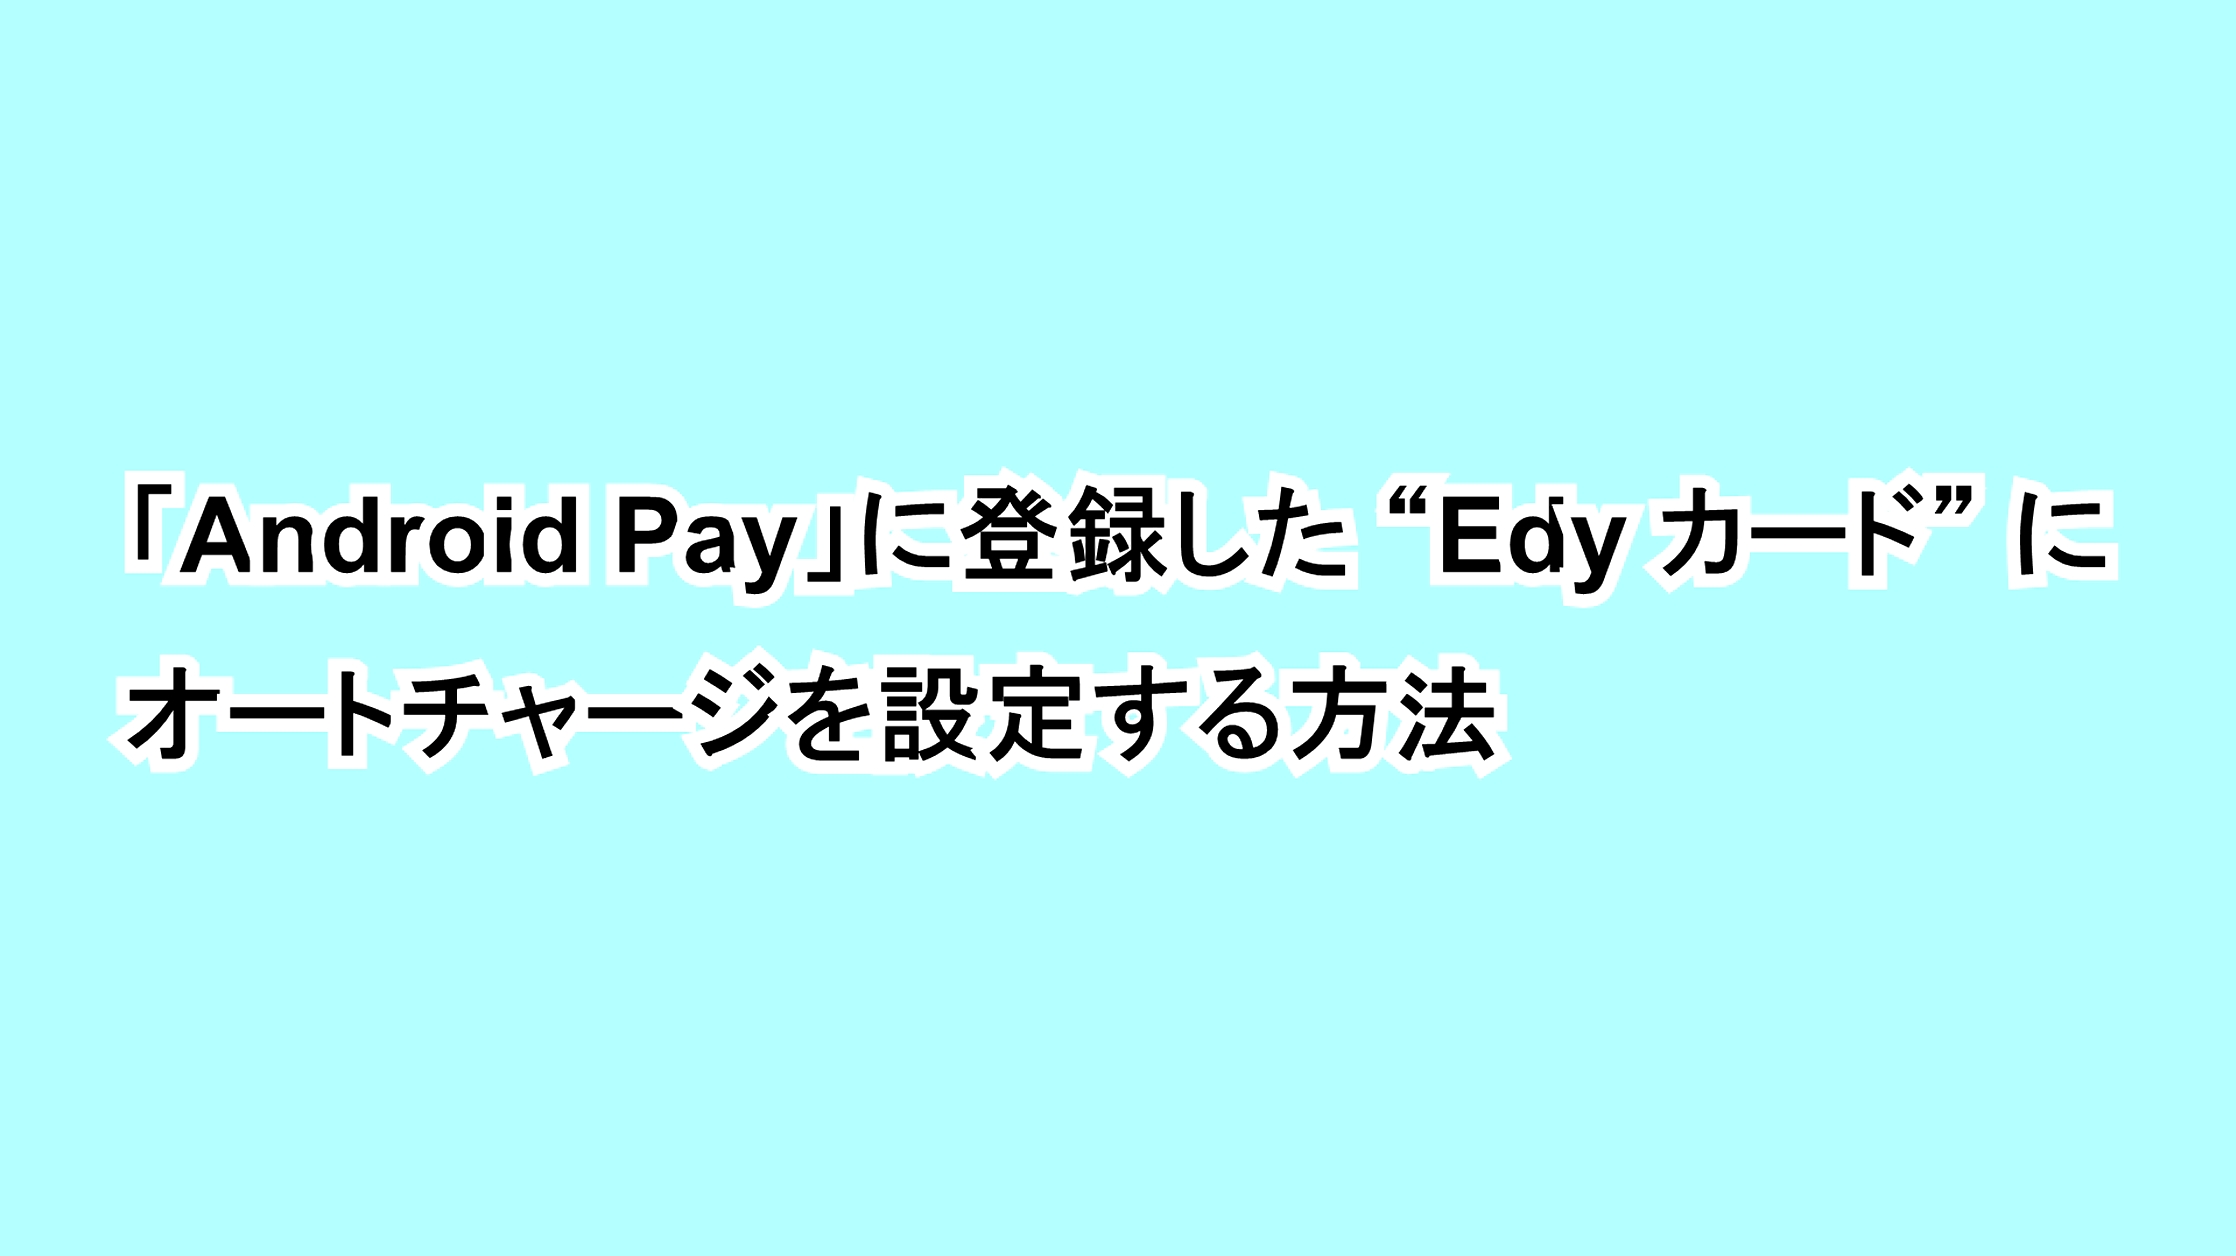 「Android Pay」に登録した“Edy カード”にオートチャージを設定する方法